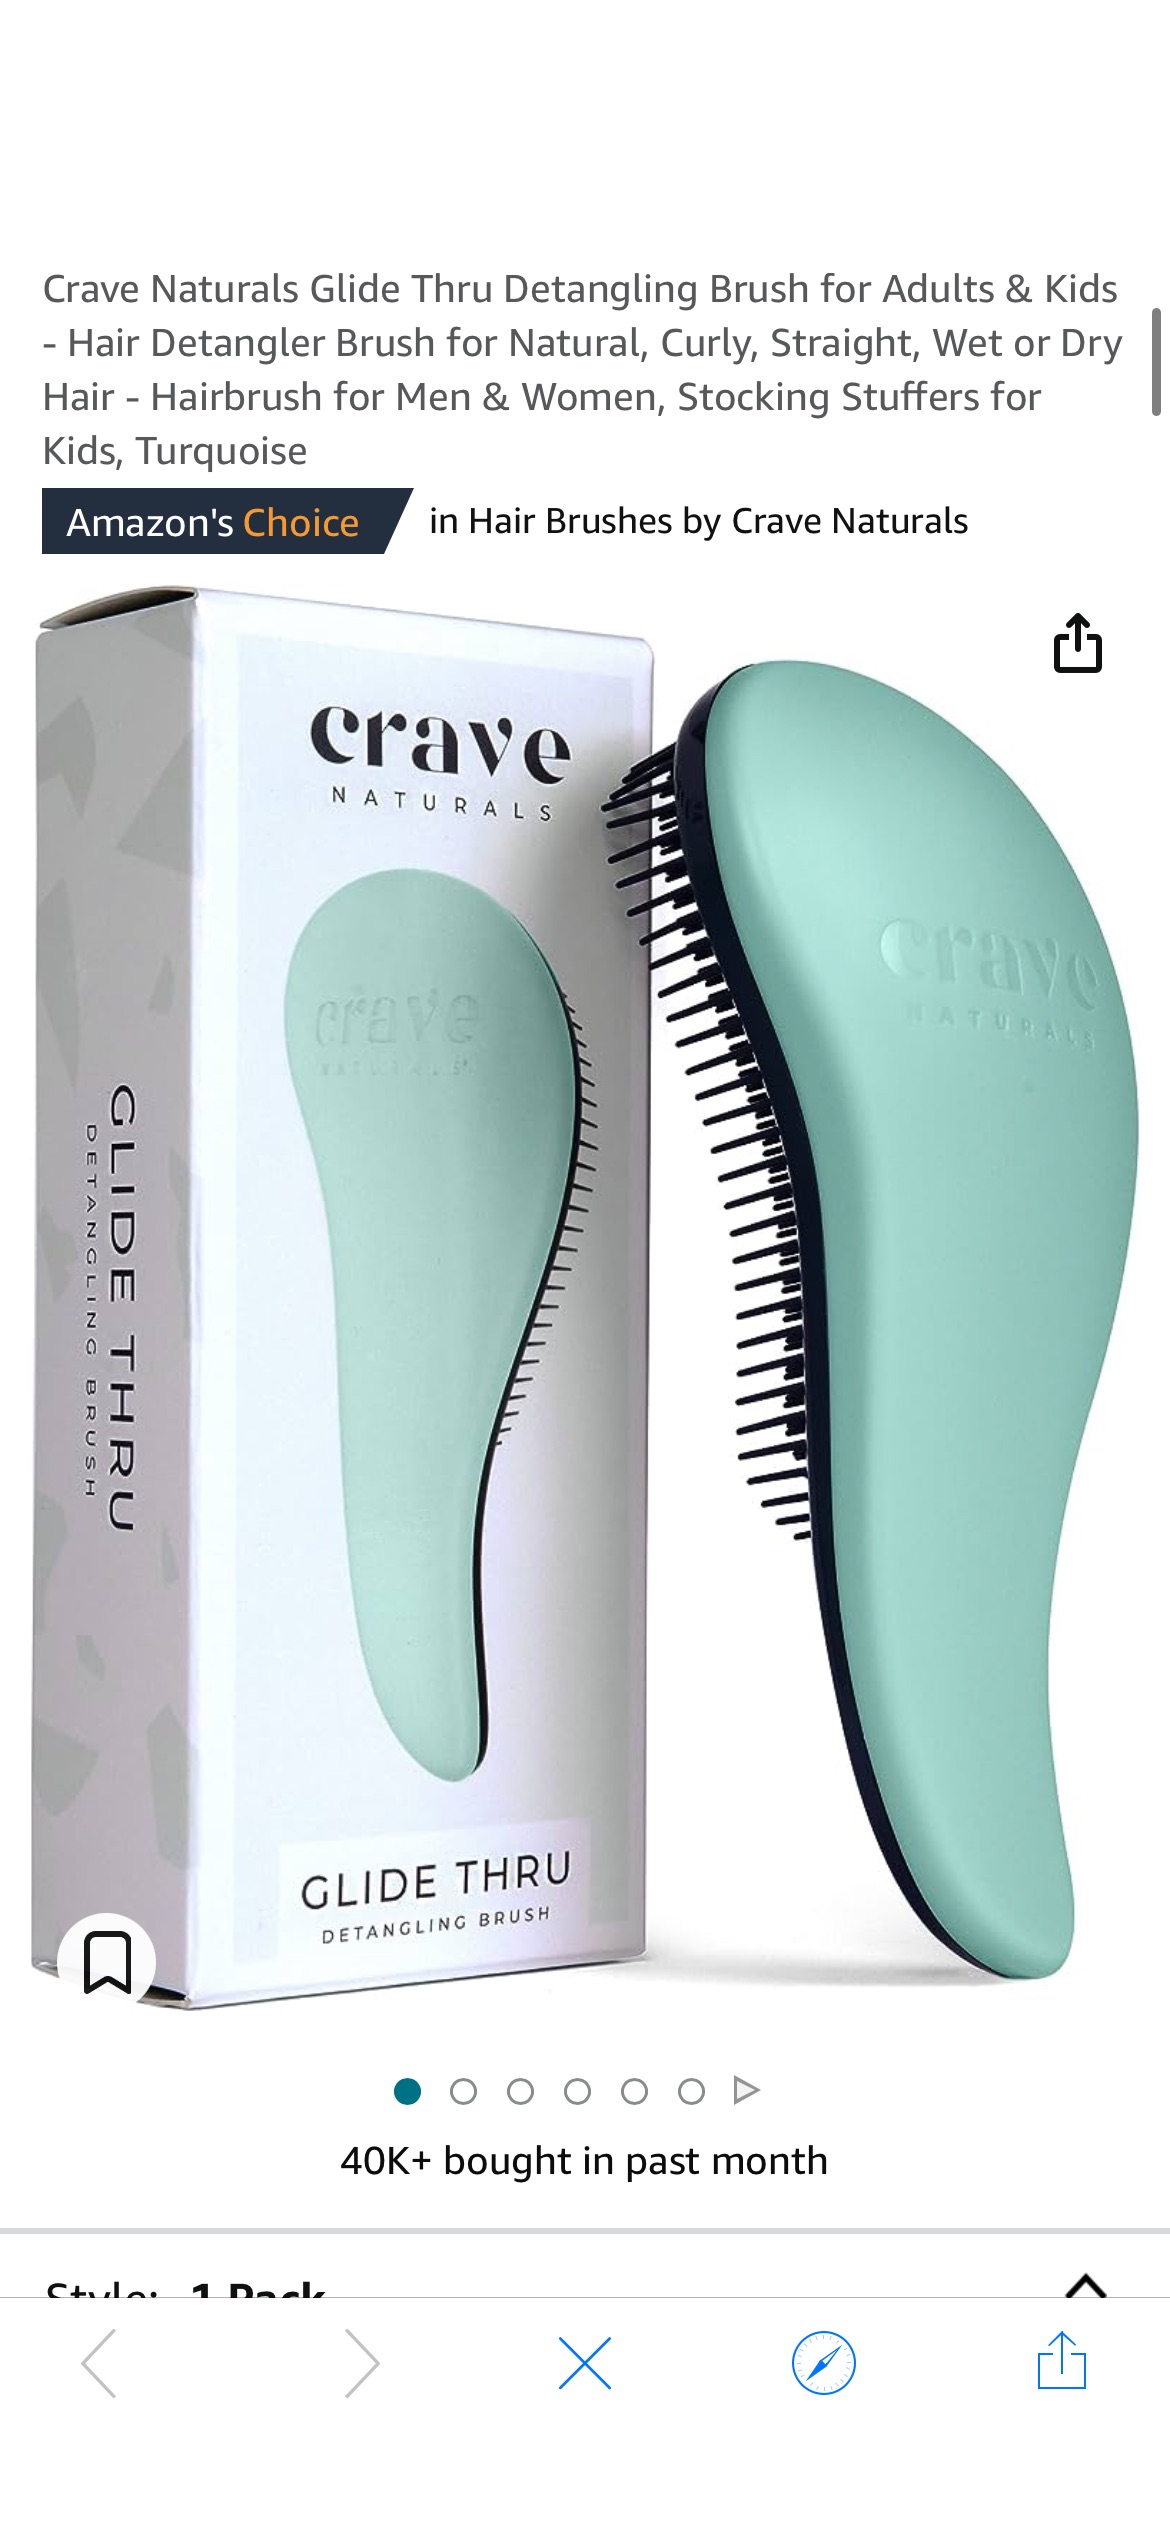 Amazon.com : Crave Naturals Glide Thru Detangling Brush for Adults & Kids - Hair Detangler Brush for Natural, Curly, Straight, Wet or Dry Hair - Hairbrush for Men & Women, Stocking Stuffers for Kids, 